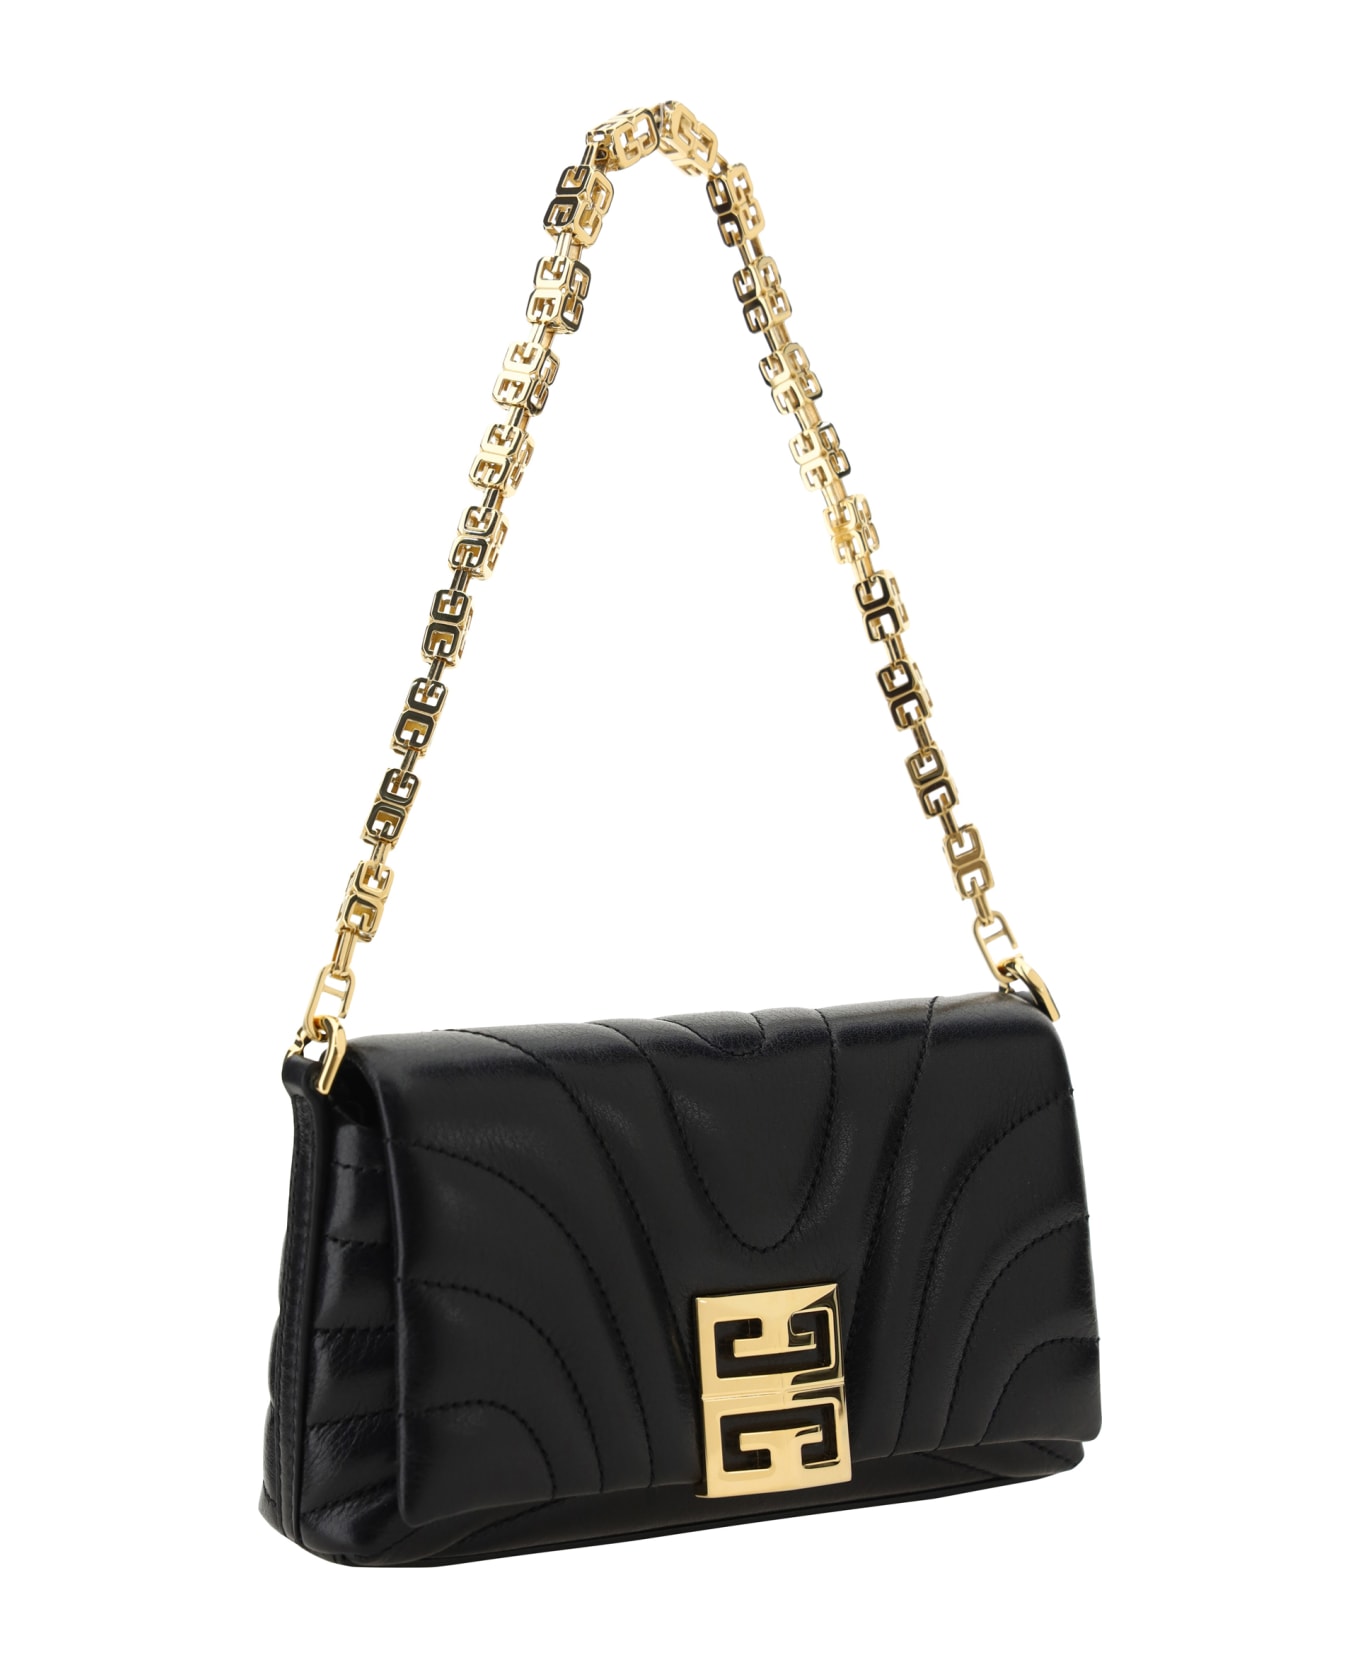 Givenchy 4g Soft Micro Shoulder Bag - Black